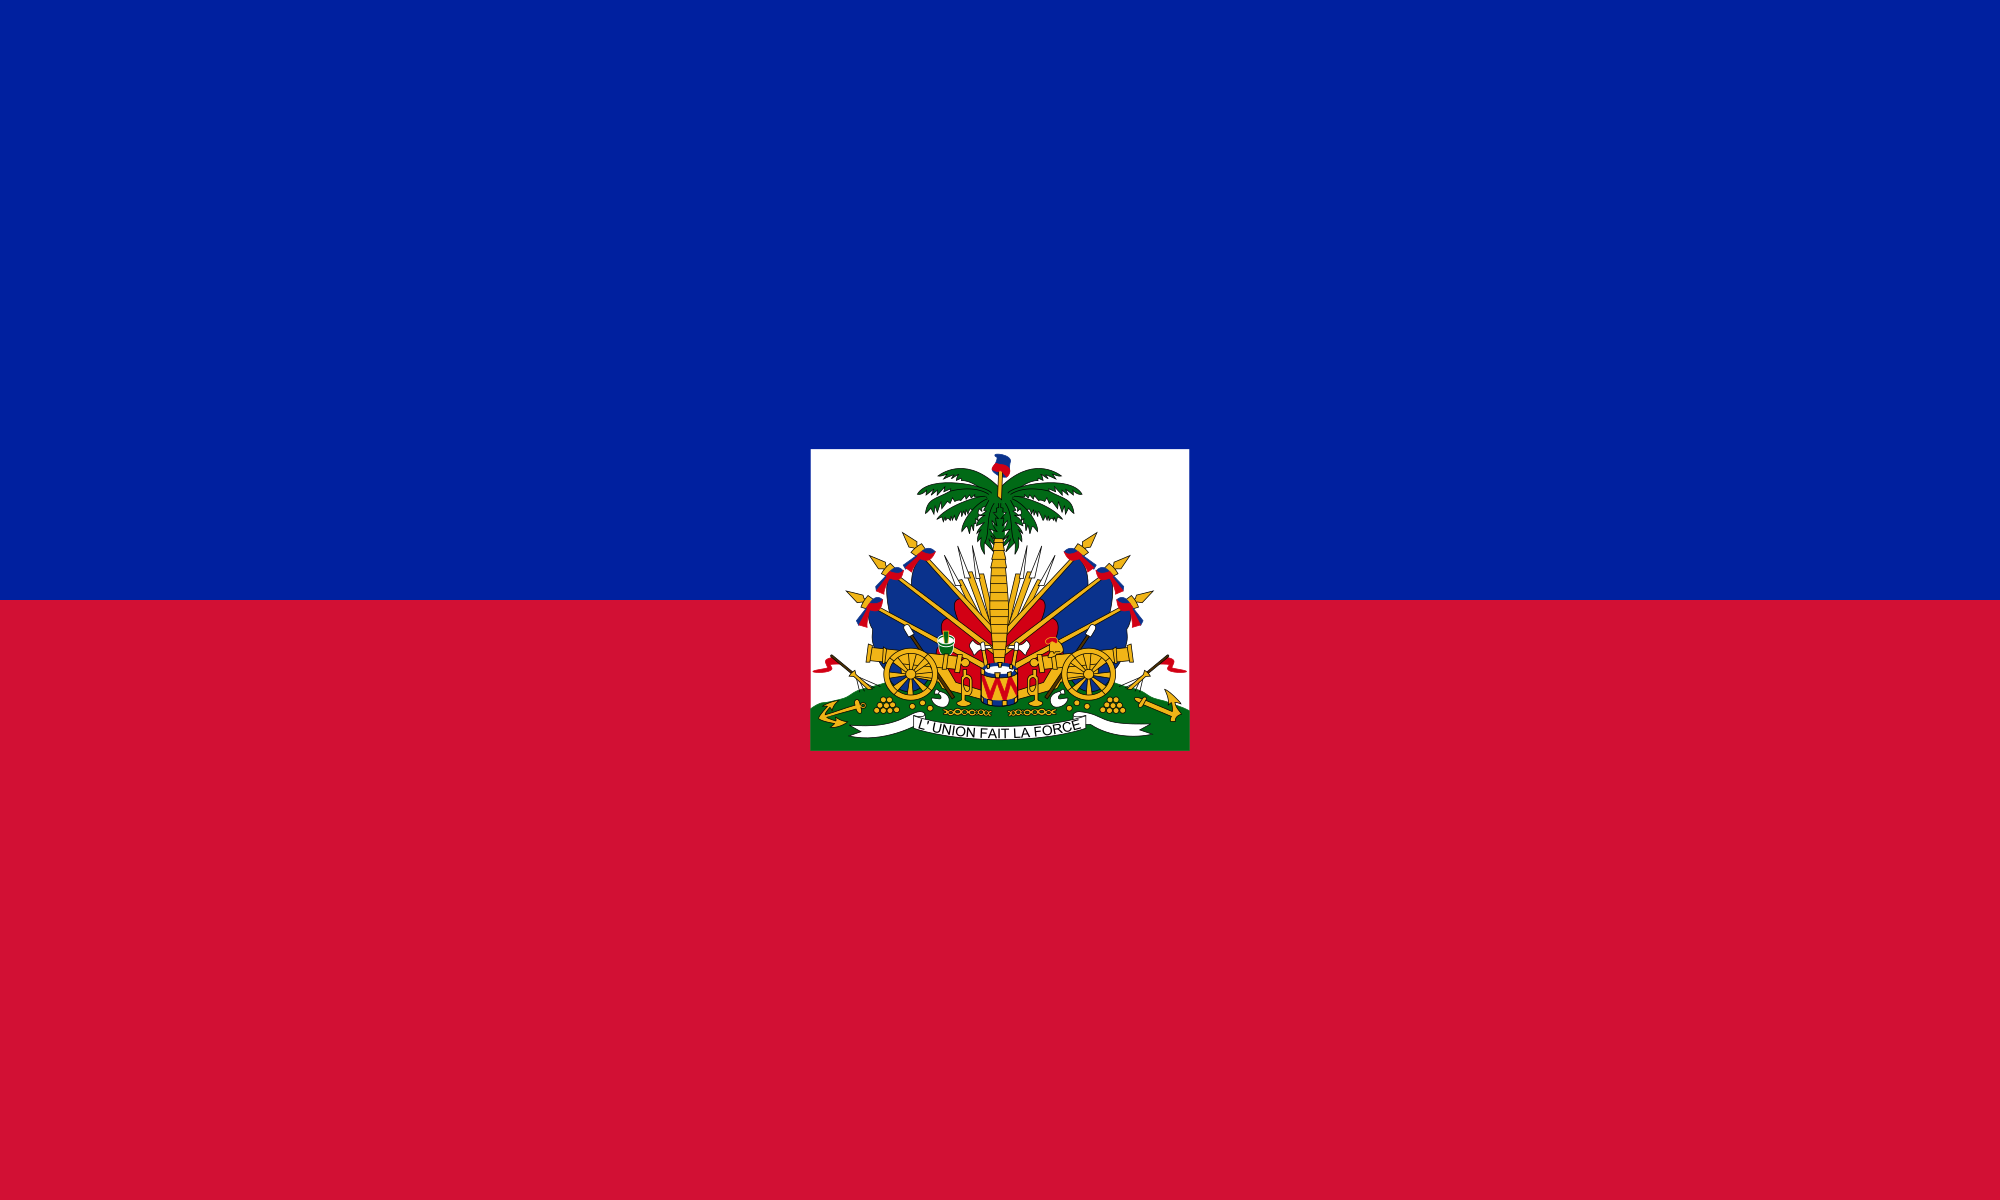 Connaissez-vous “La Dessalinienne”, l’hymne national de Haiti ?